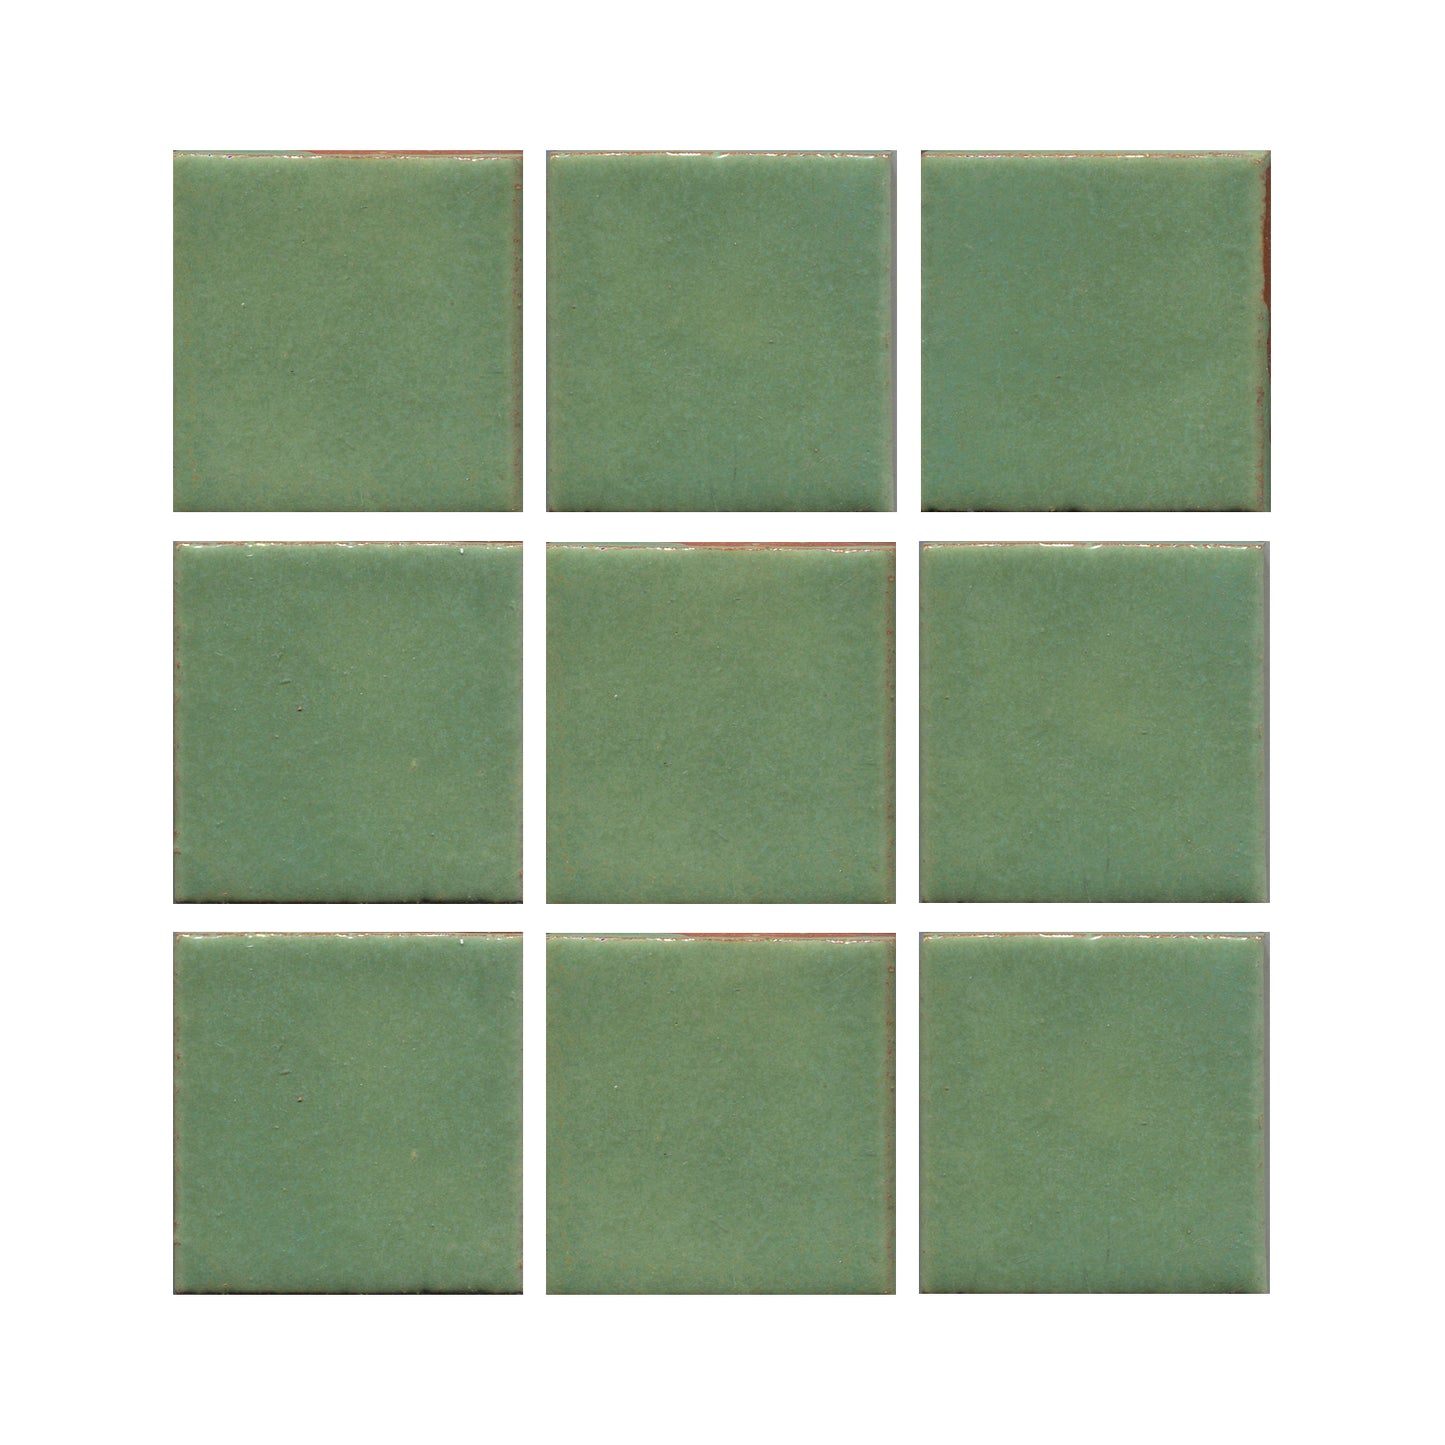 Wasabi green 3x3 field tile